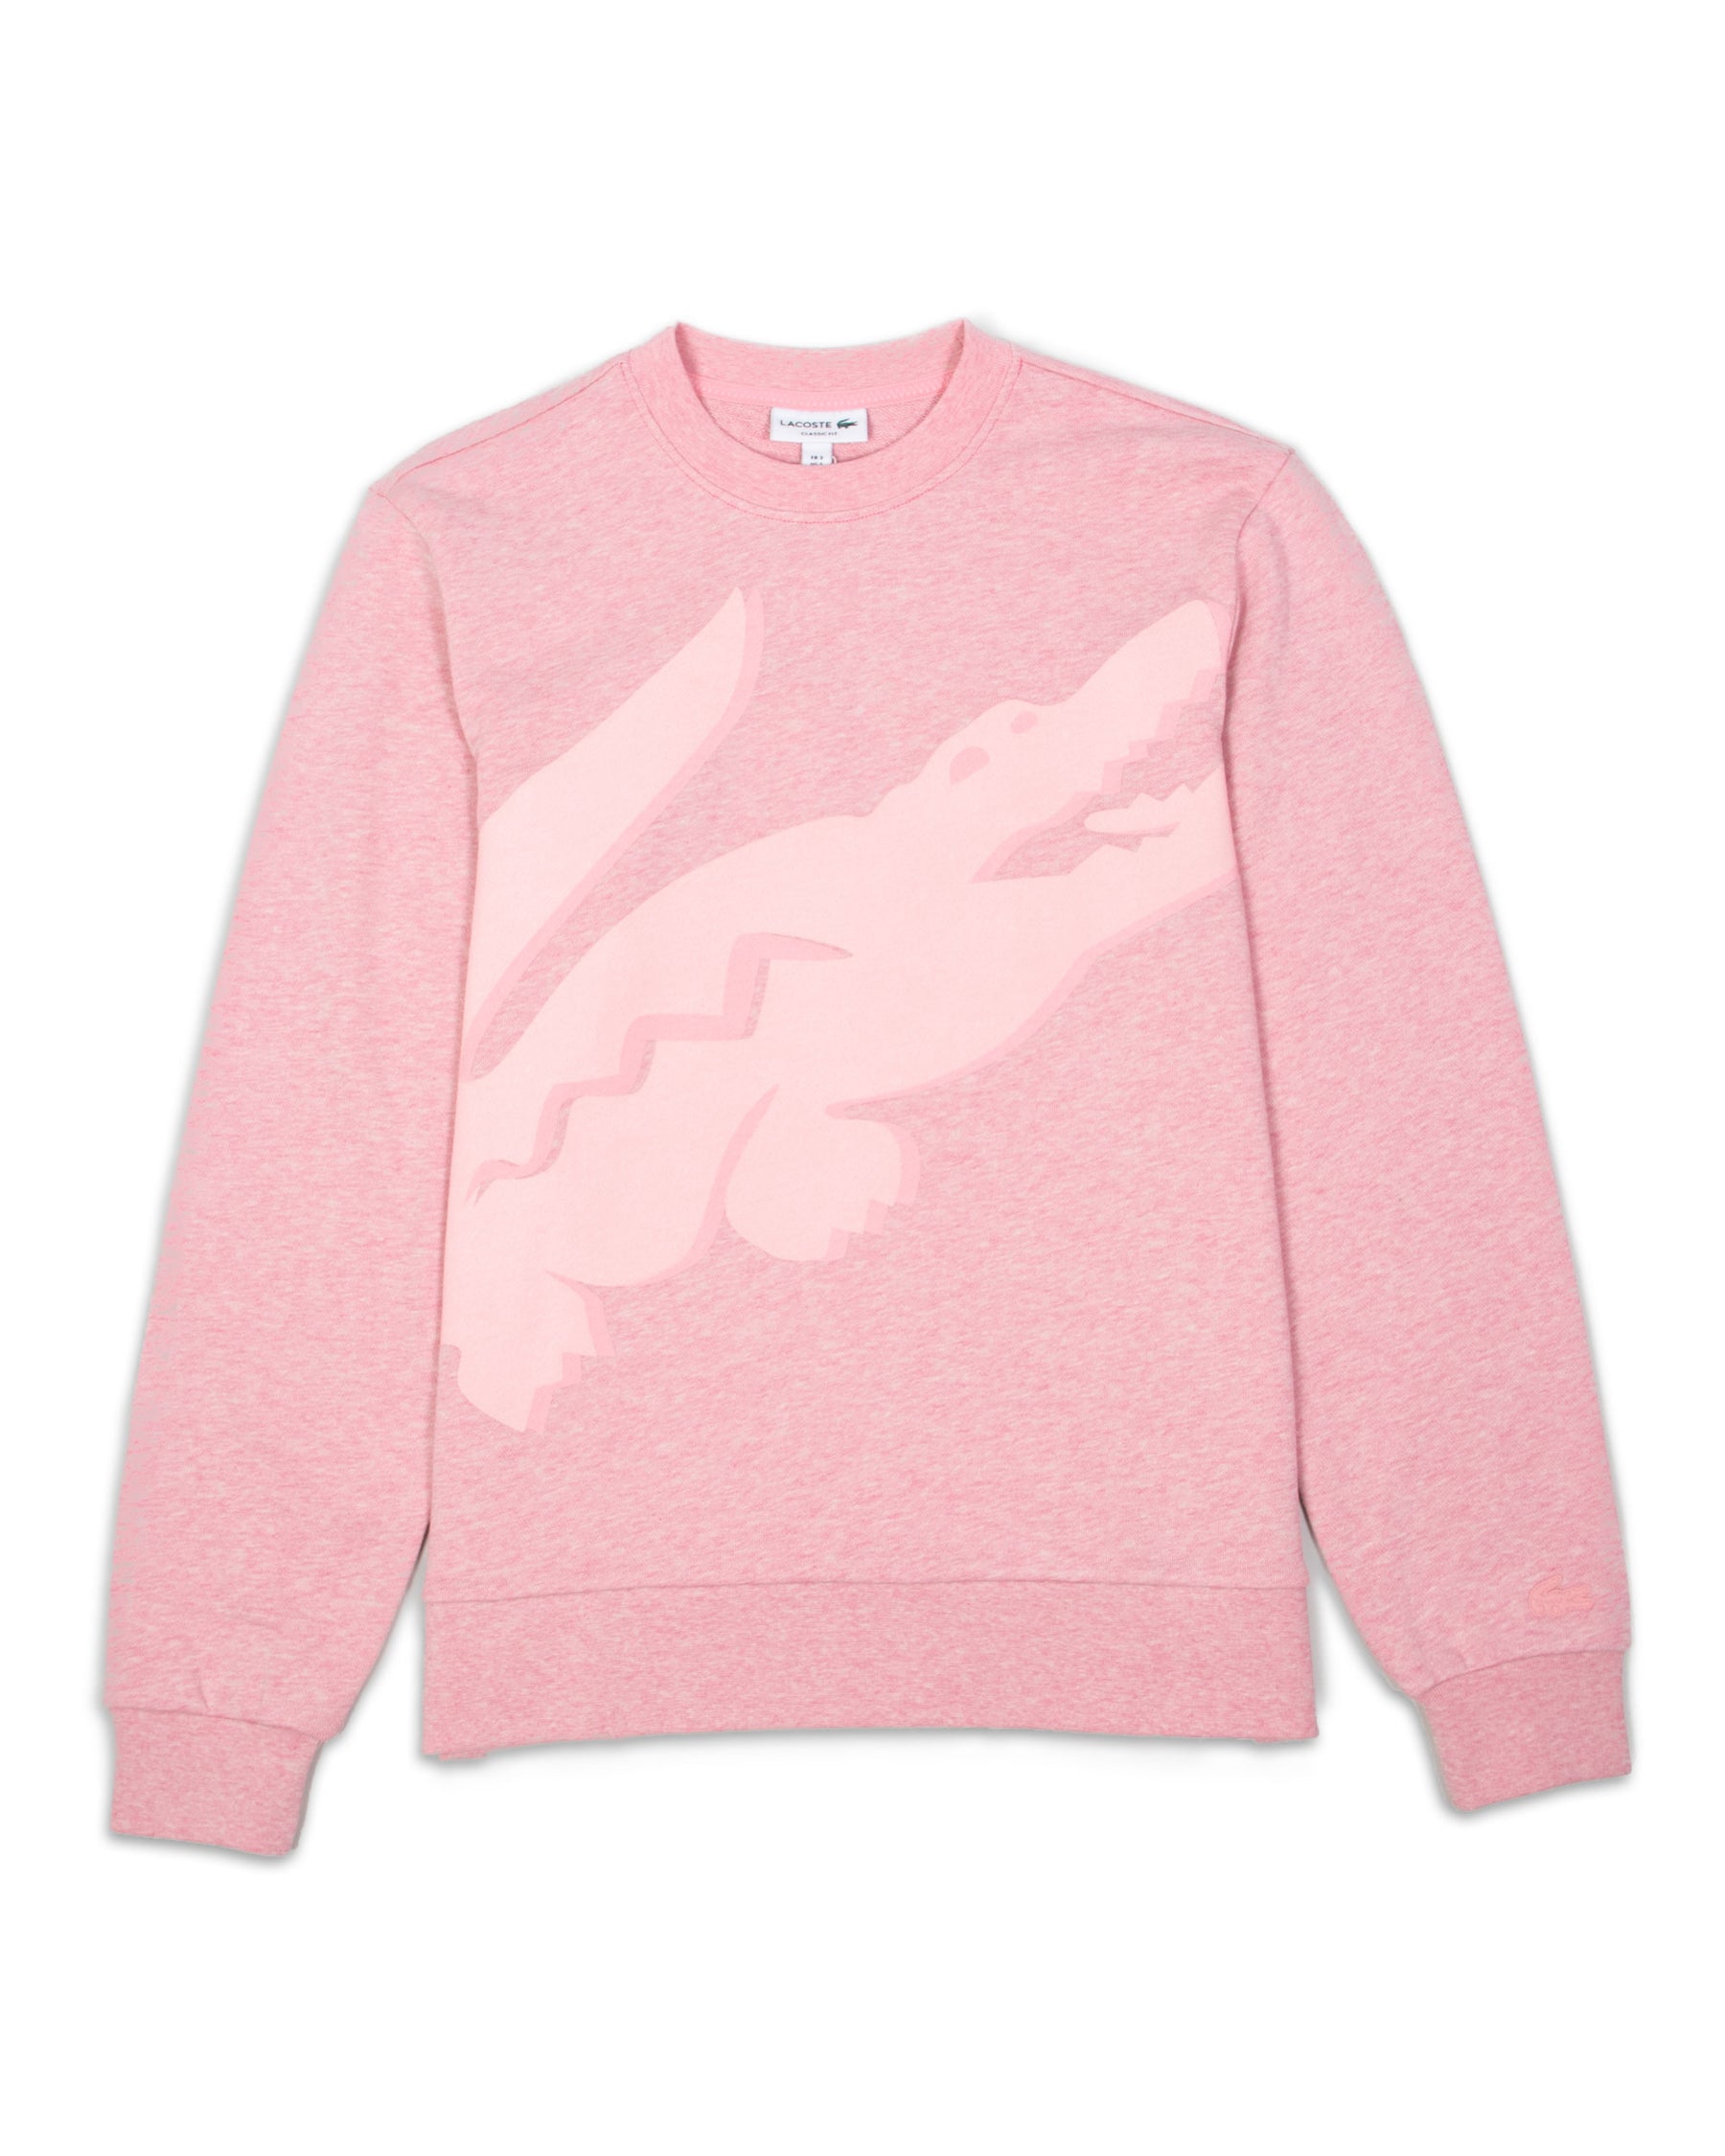 Sweatshirt Lacoste Logo Pink Big